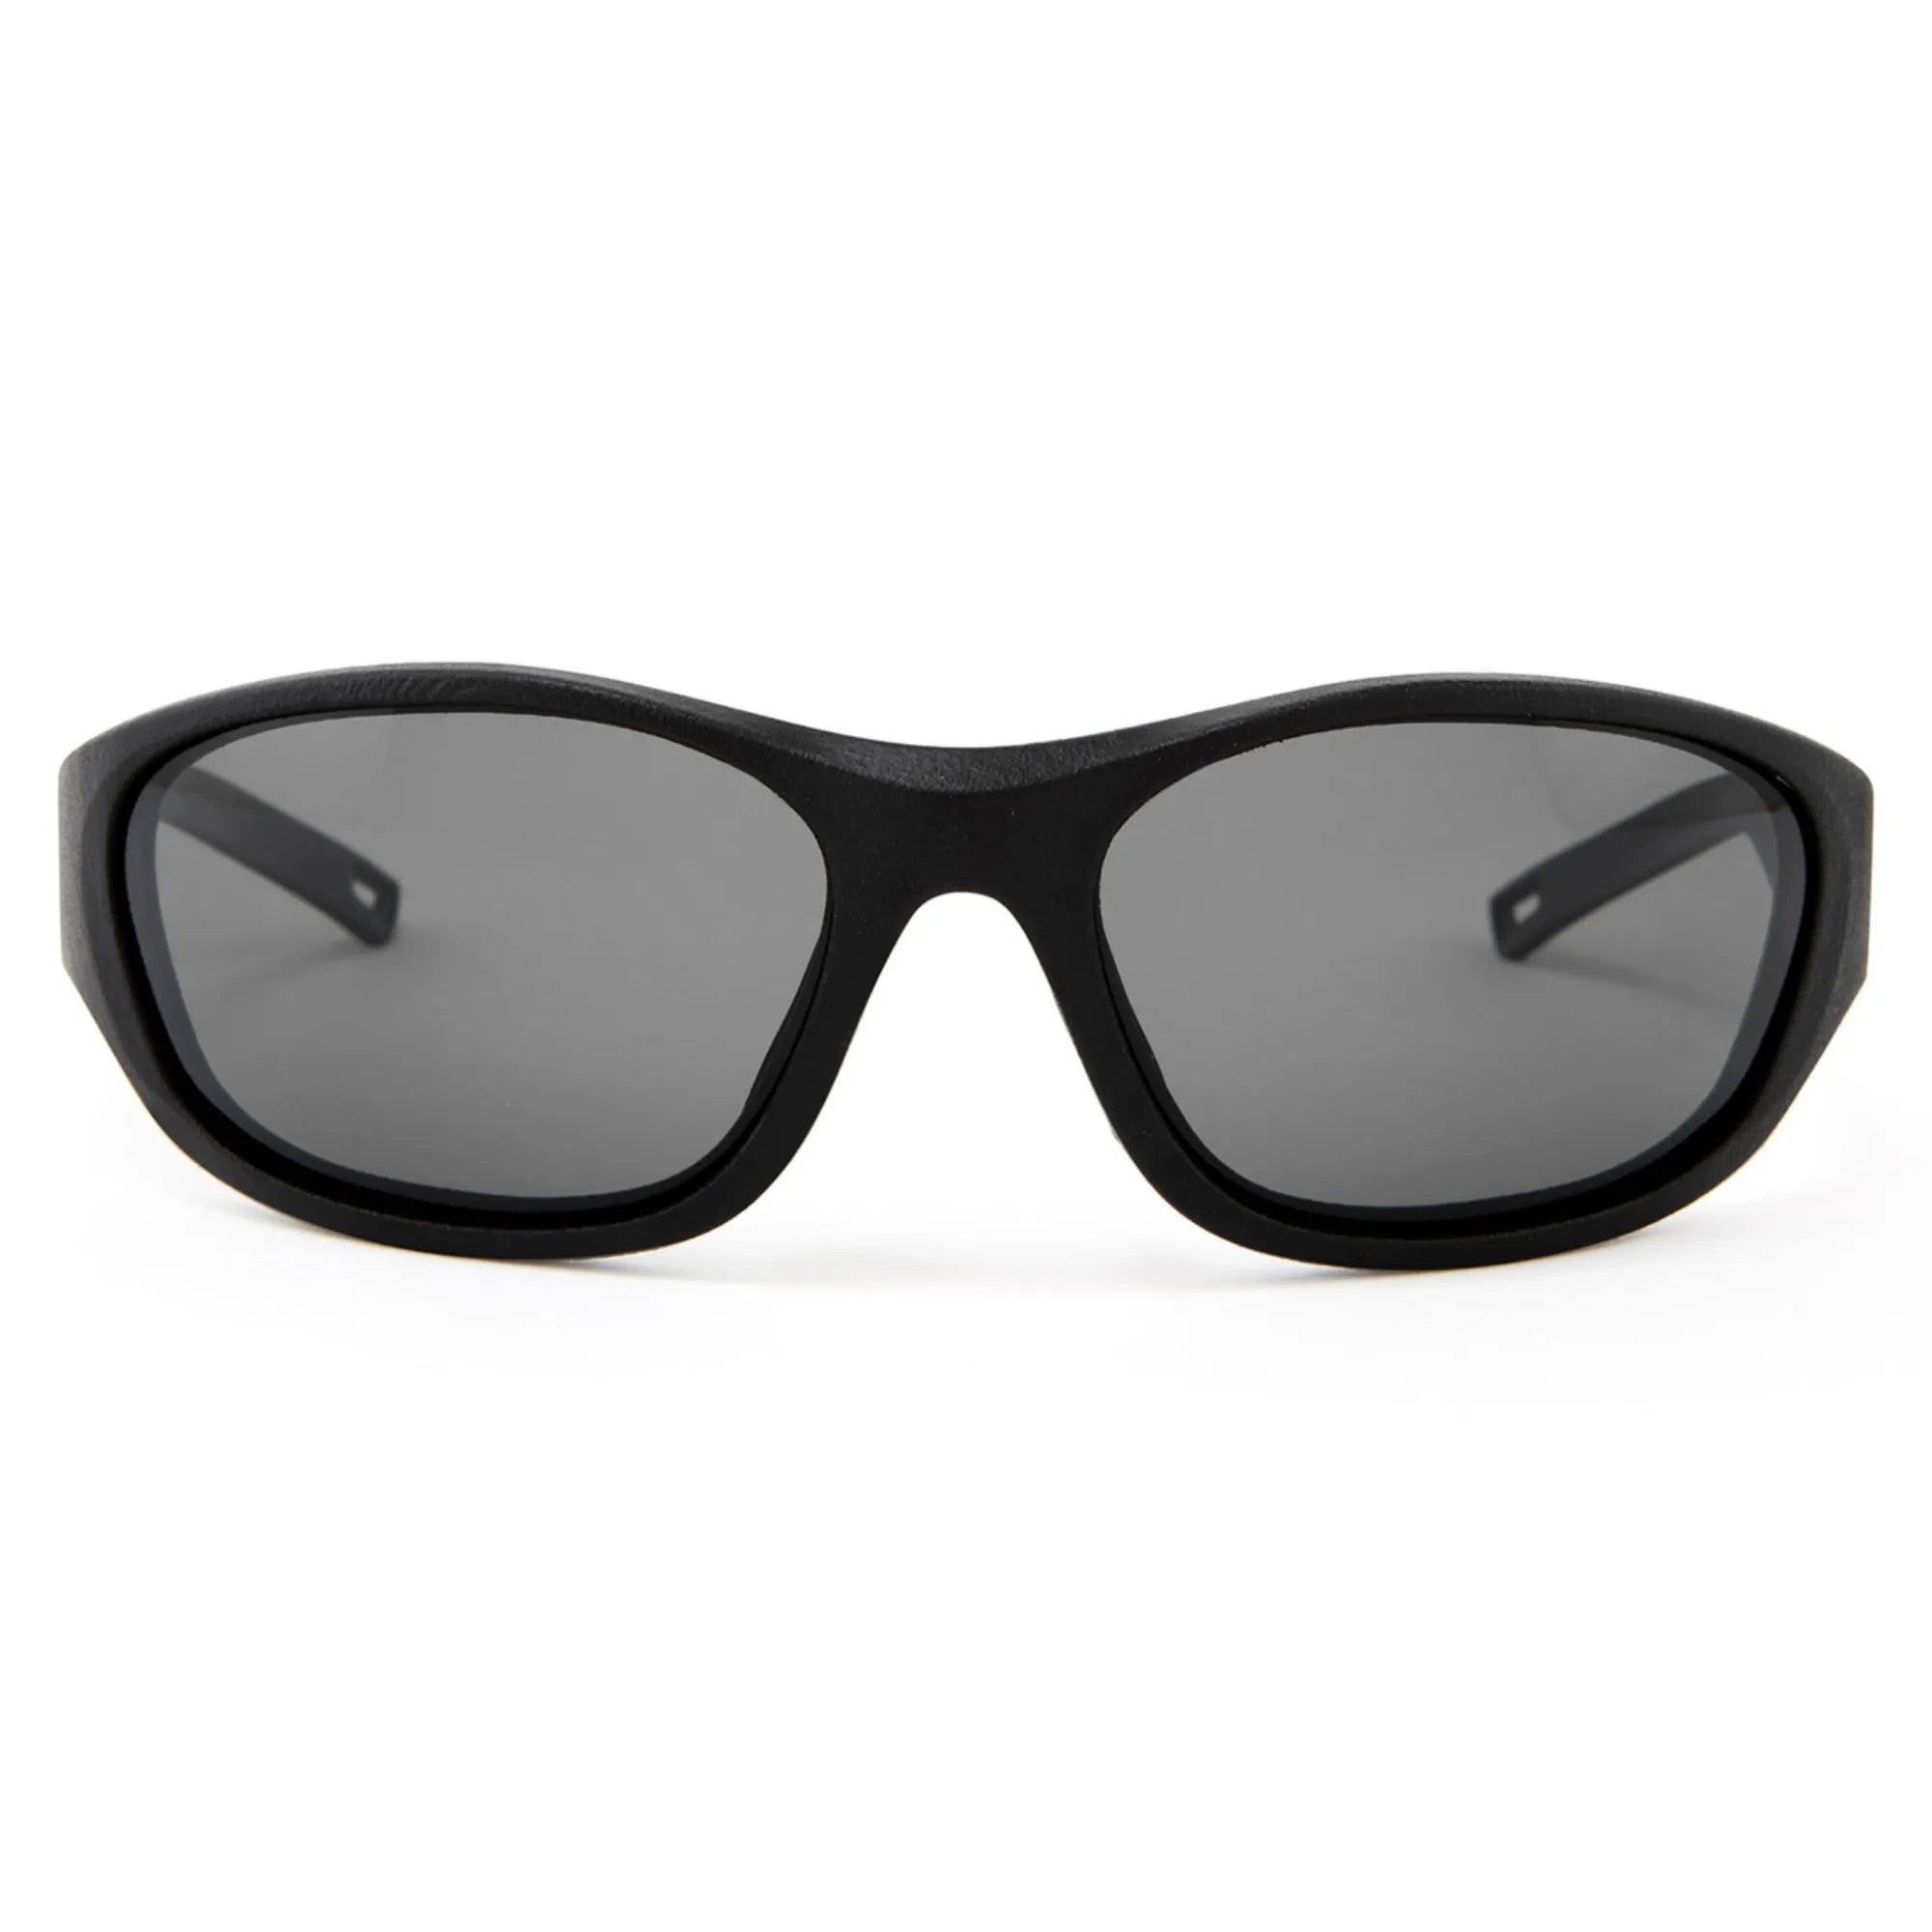 Classic Sunglasses - Black